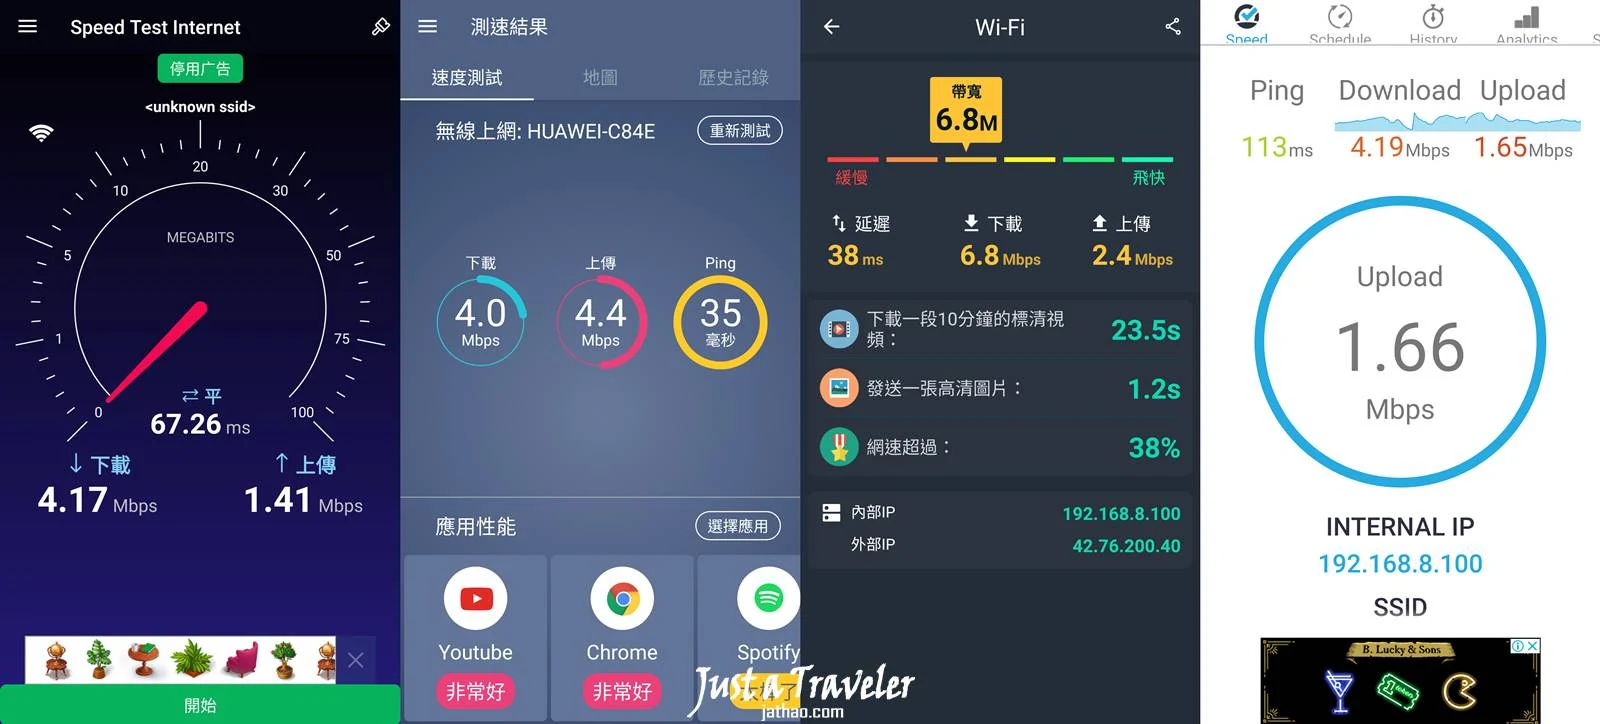 台灣-WiFi機-網速-WiFi分享器-推薦-台灣租借WiFi-台灣4G吃到飽WiFi機-隨身WiFi-CP值-便宜WiFi機-4G上網-網路